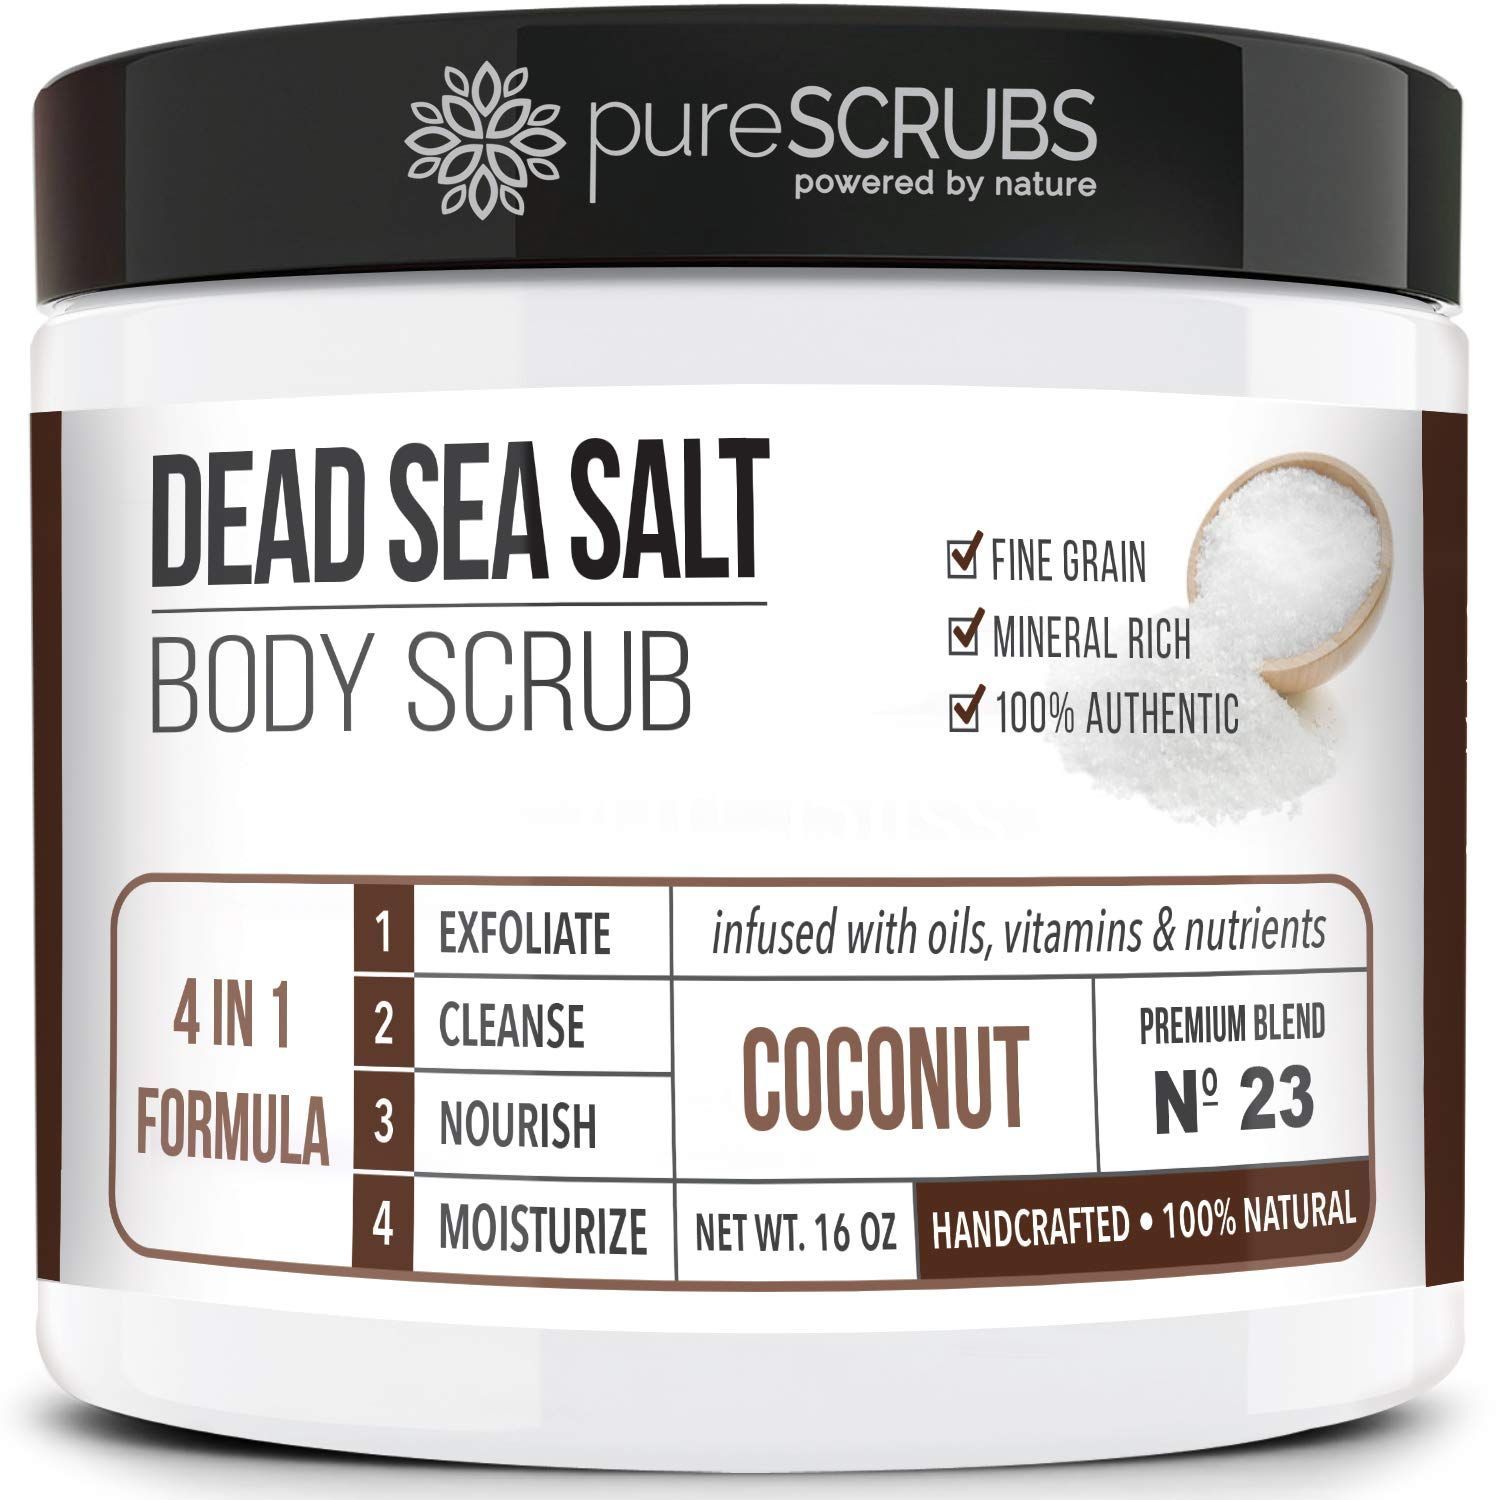 Dead Sea SAlt body scrub
